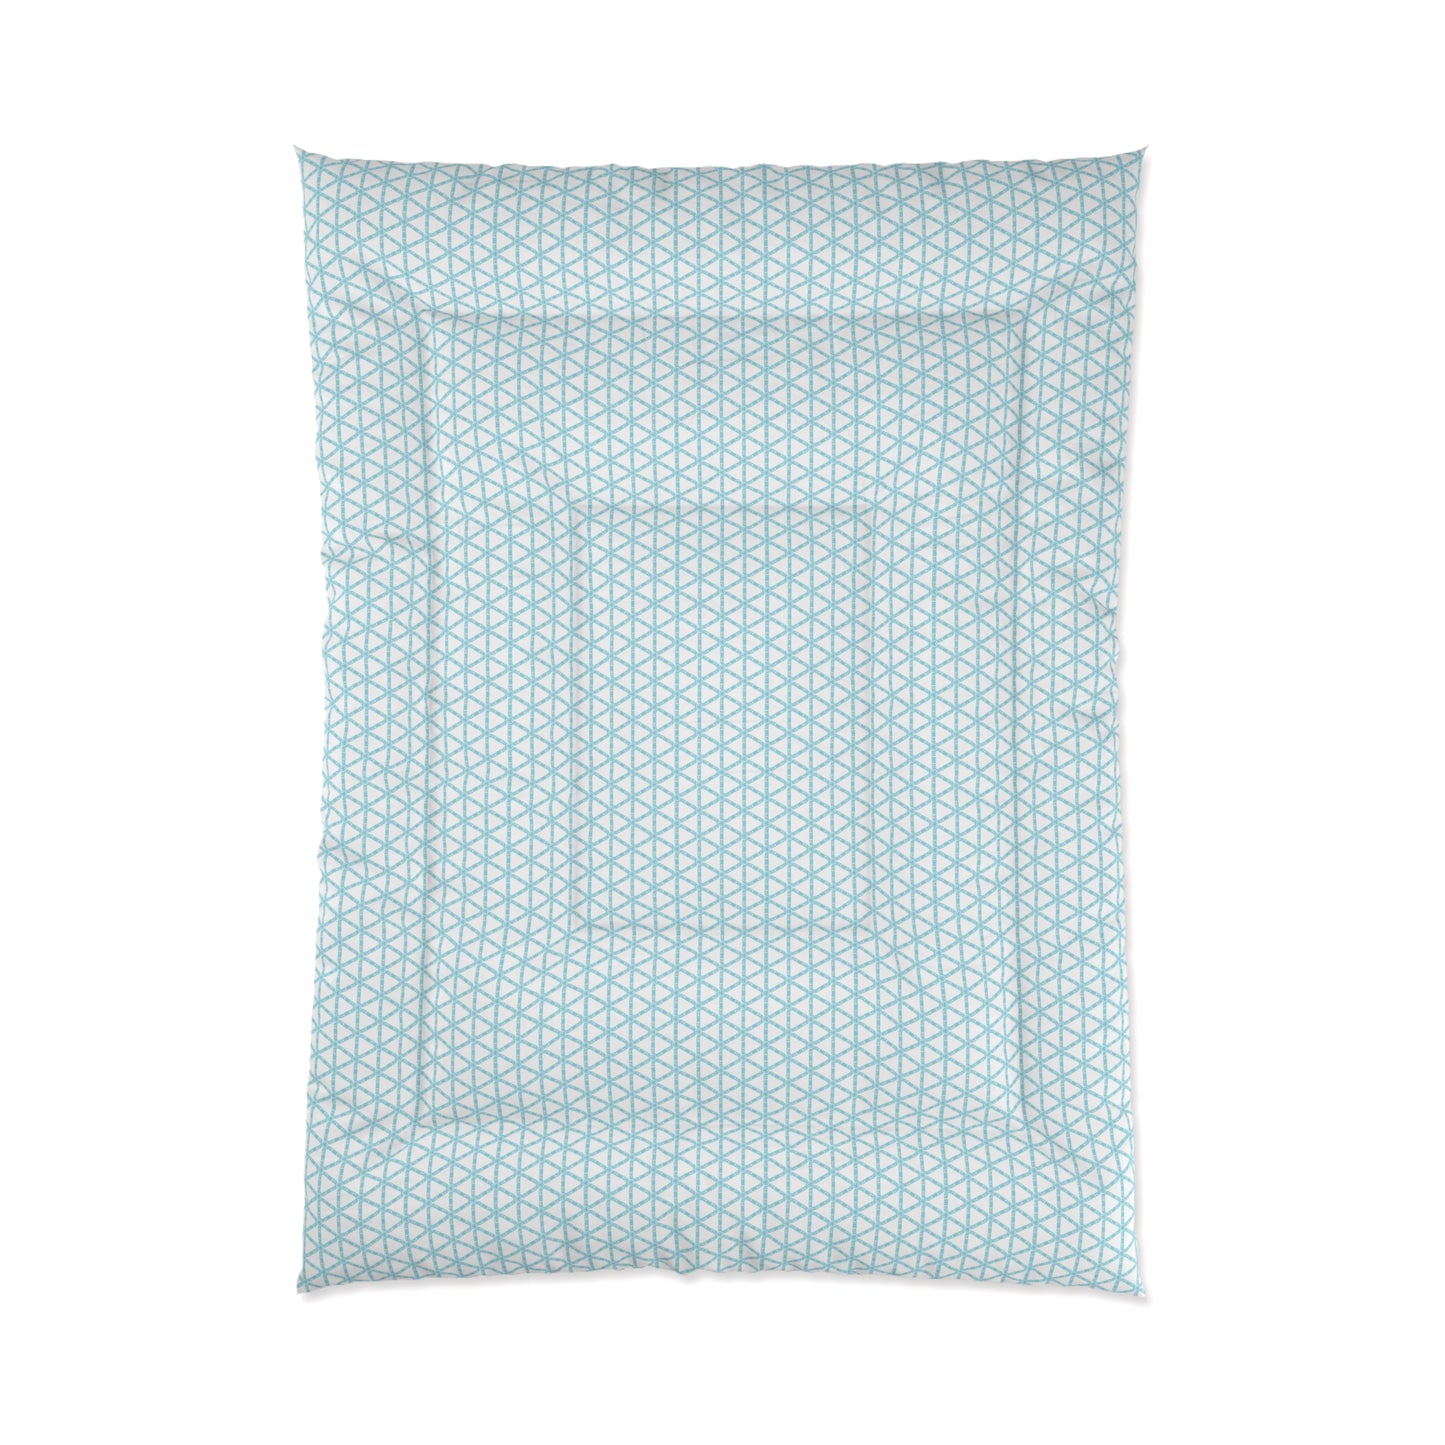 Turquoise Lattice Comforter